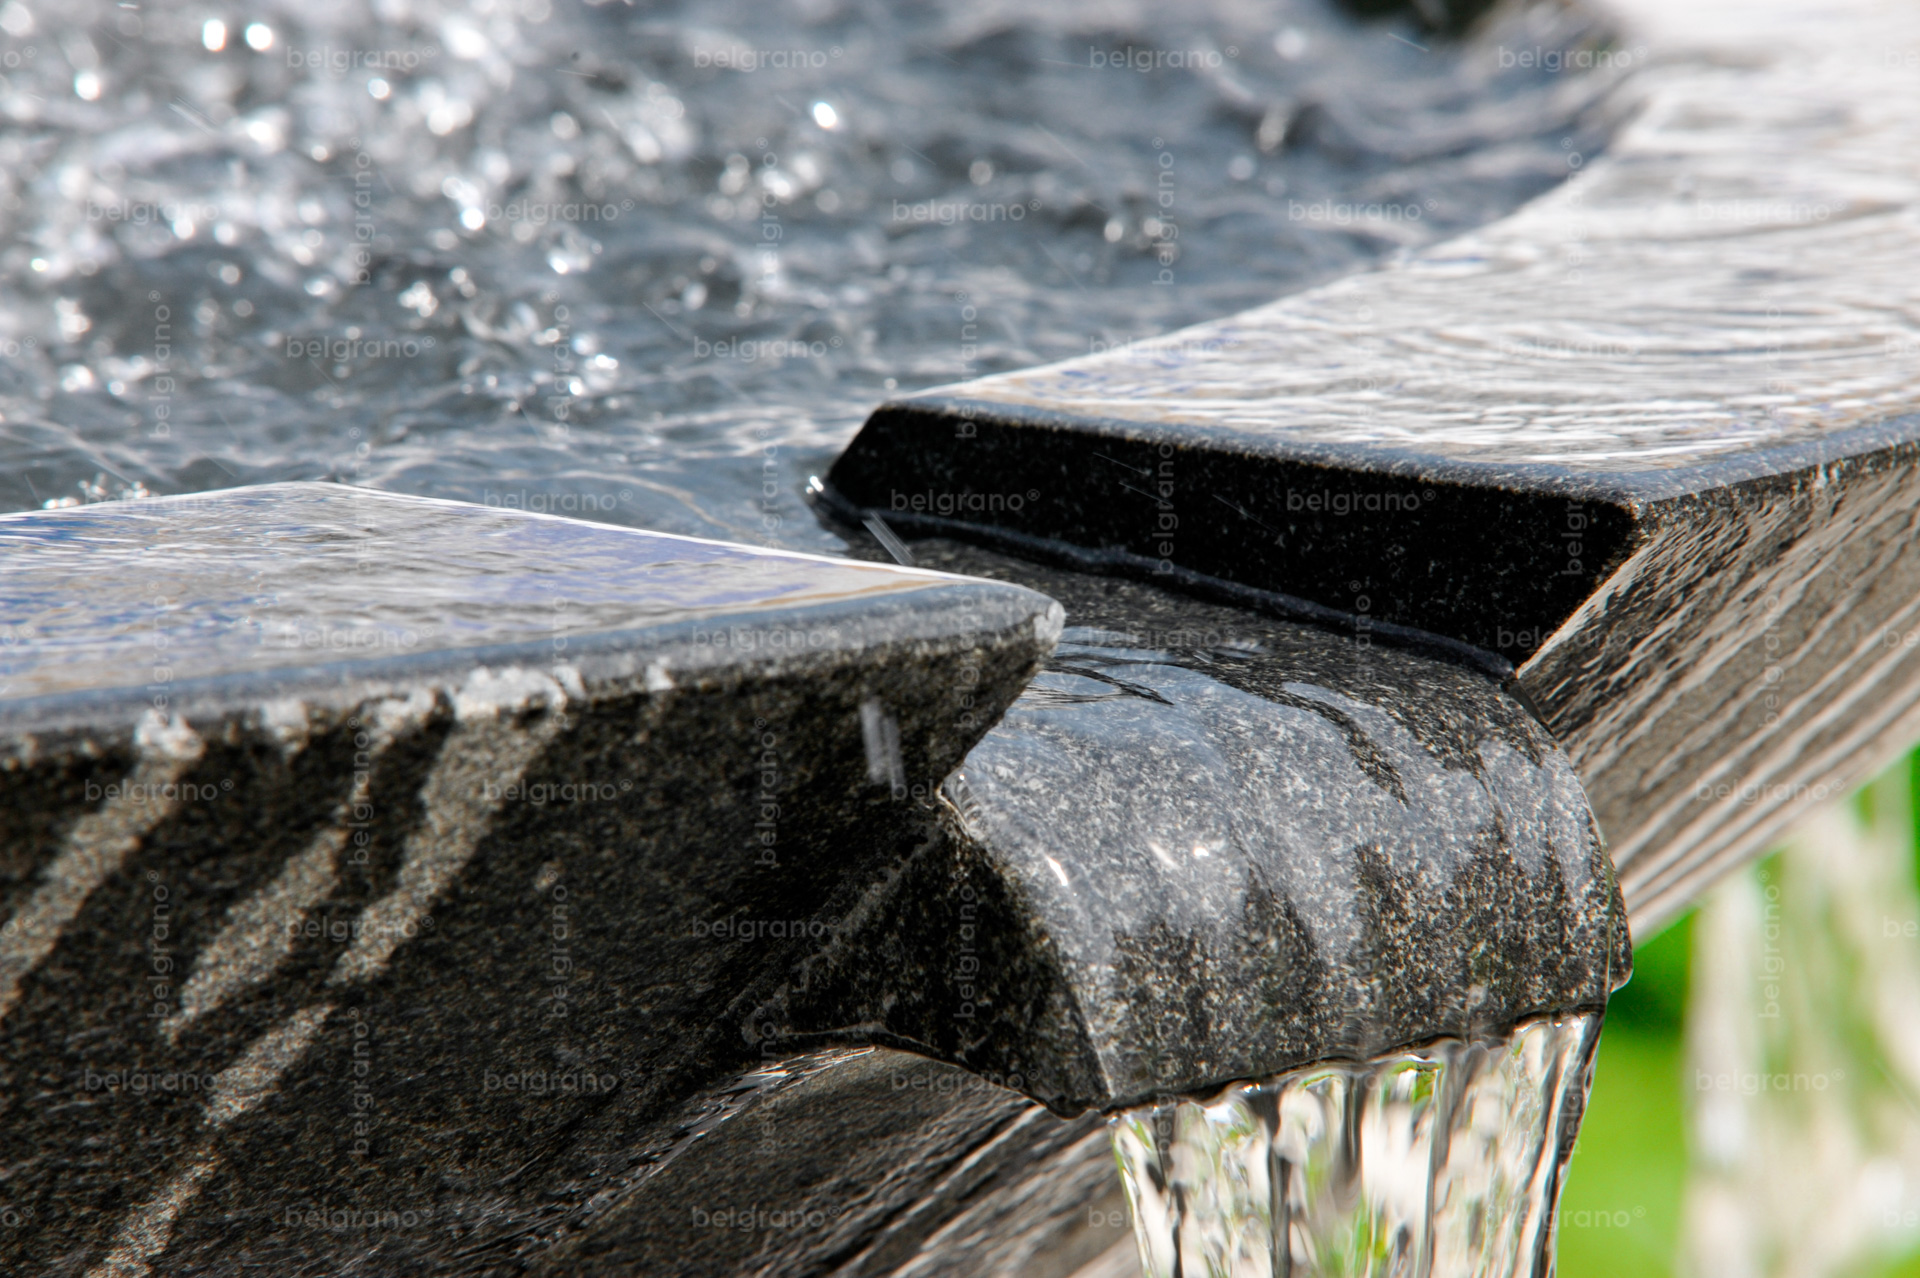 Landesgartenschau in Aschersleben mit einem belgrano® Naturstein Brunnen aus Basalt - Detailaufnahme